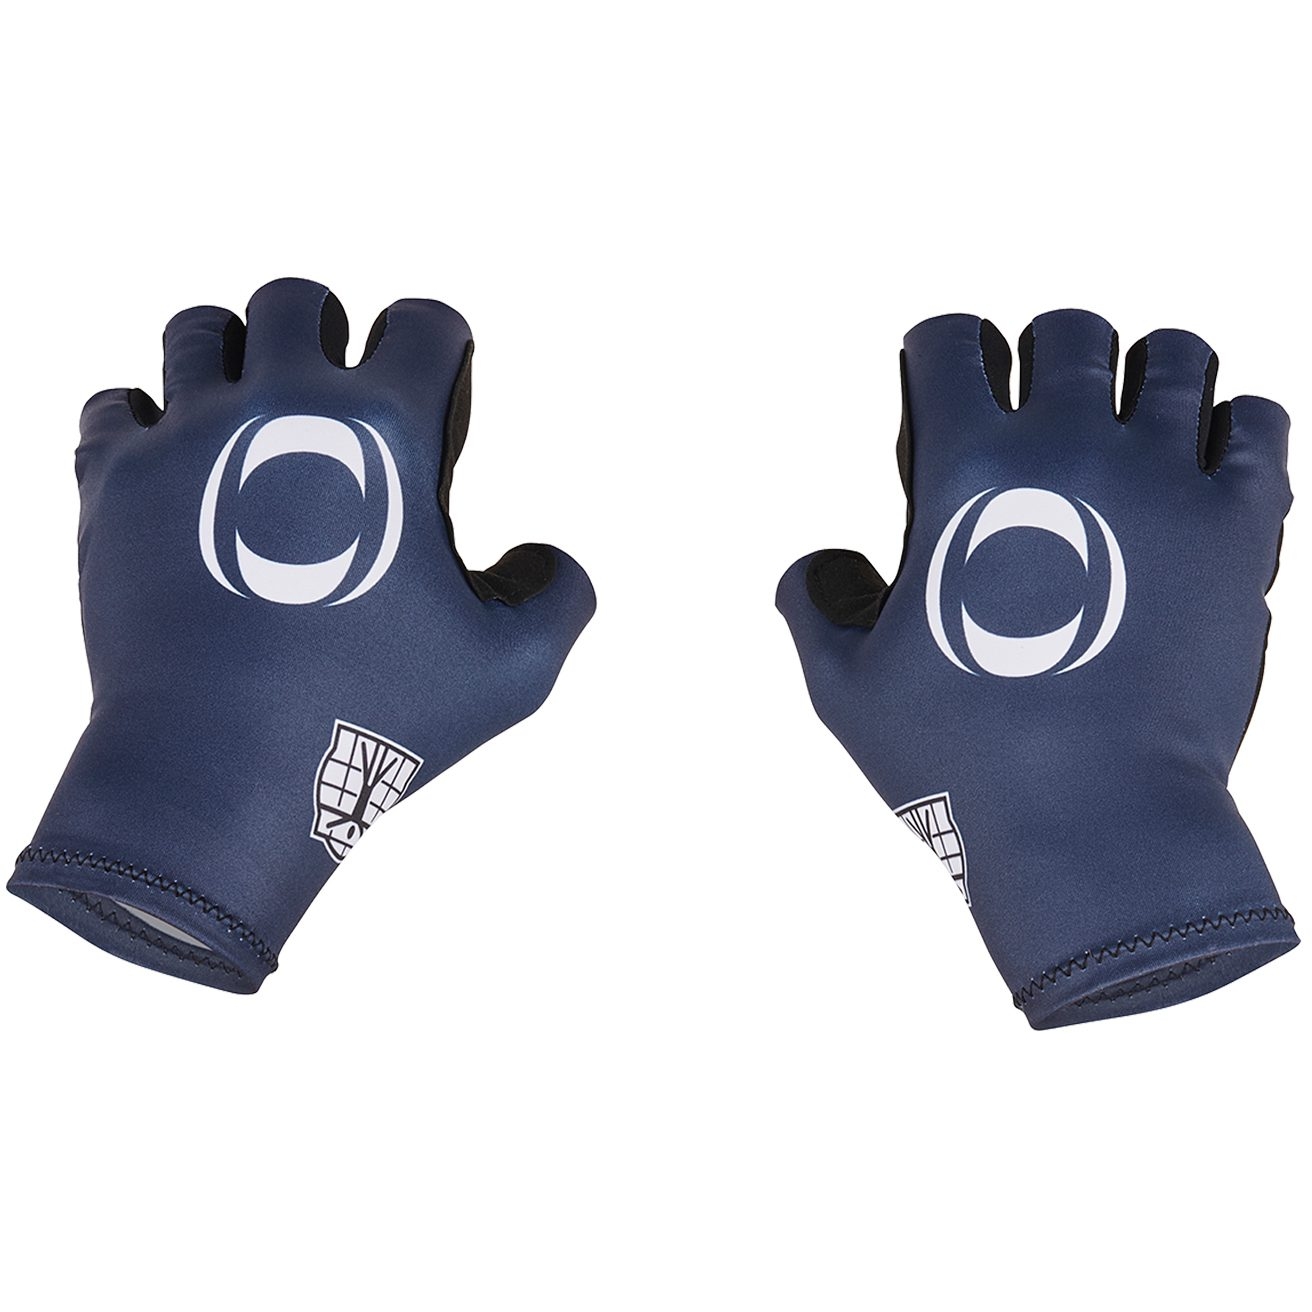 Produktbild von Bioracer Ineos Grenadiers Sommer-Handschuhe - navy blue